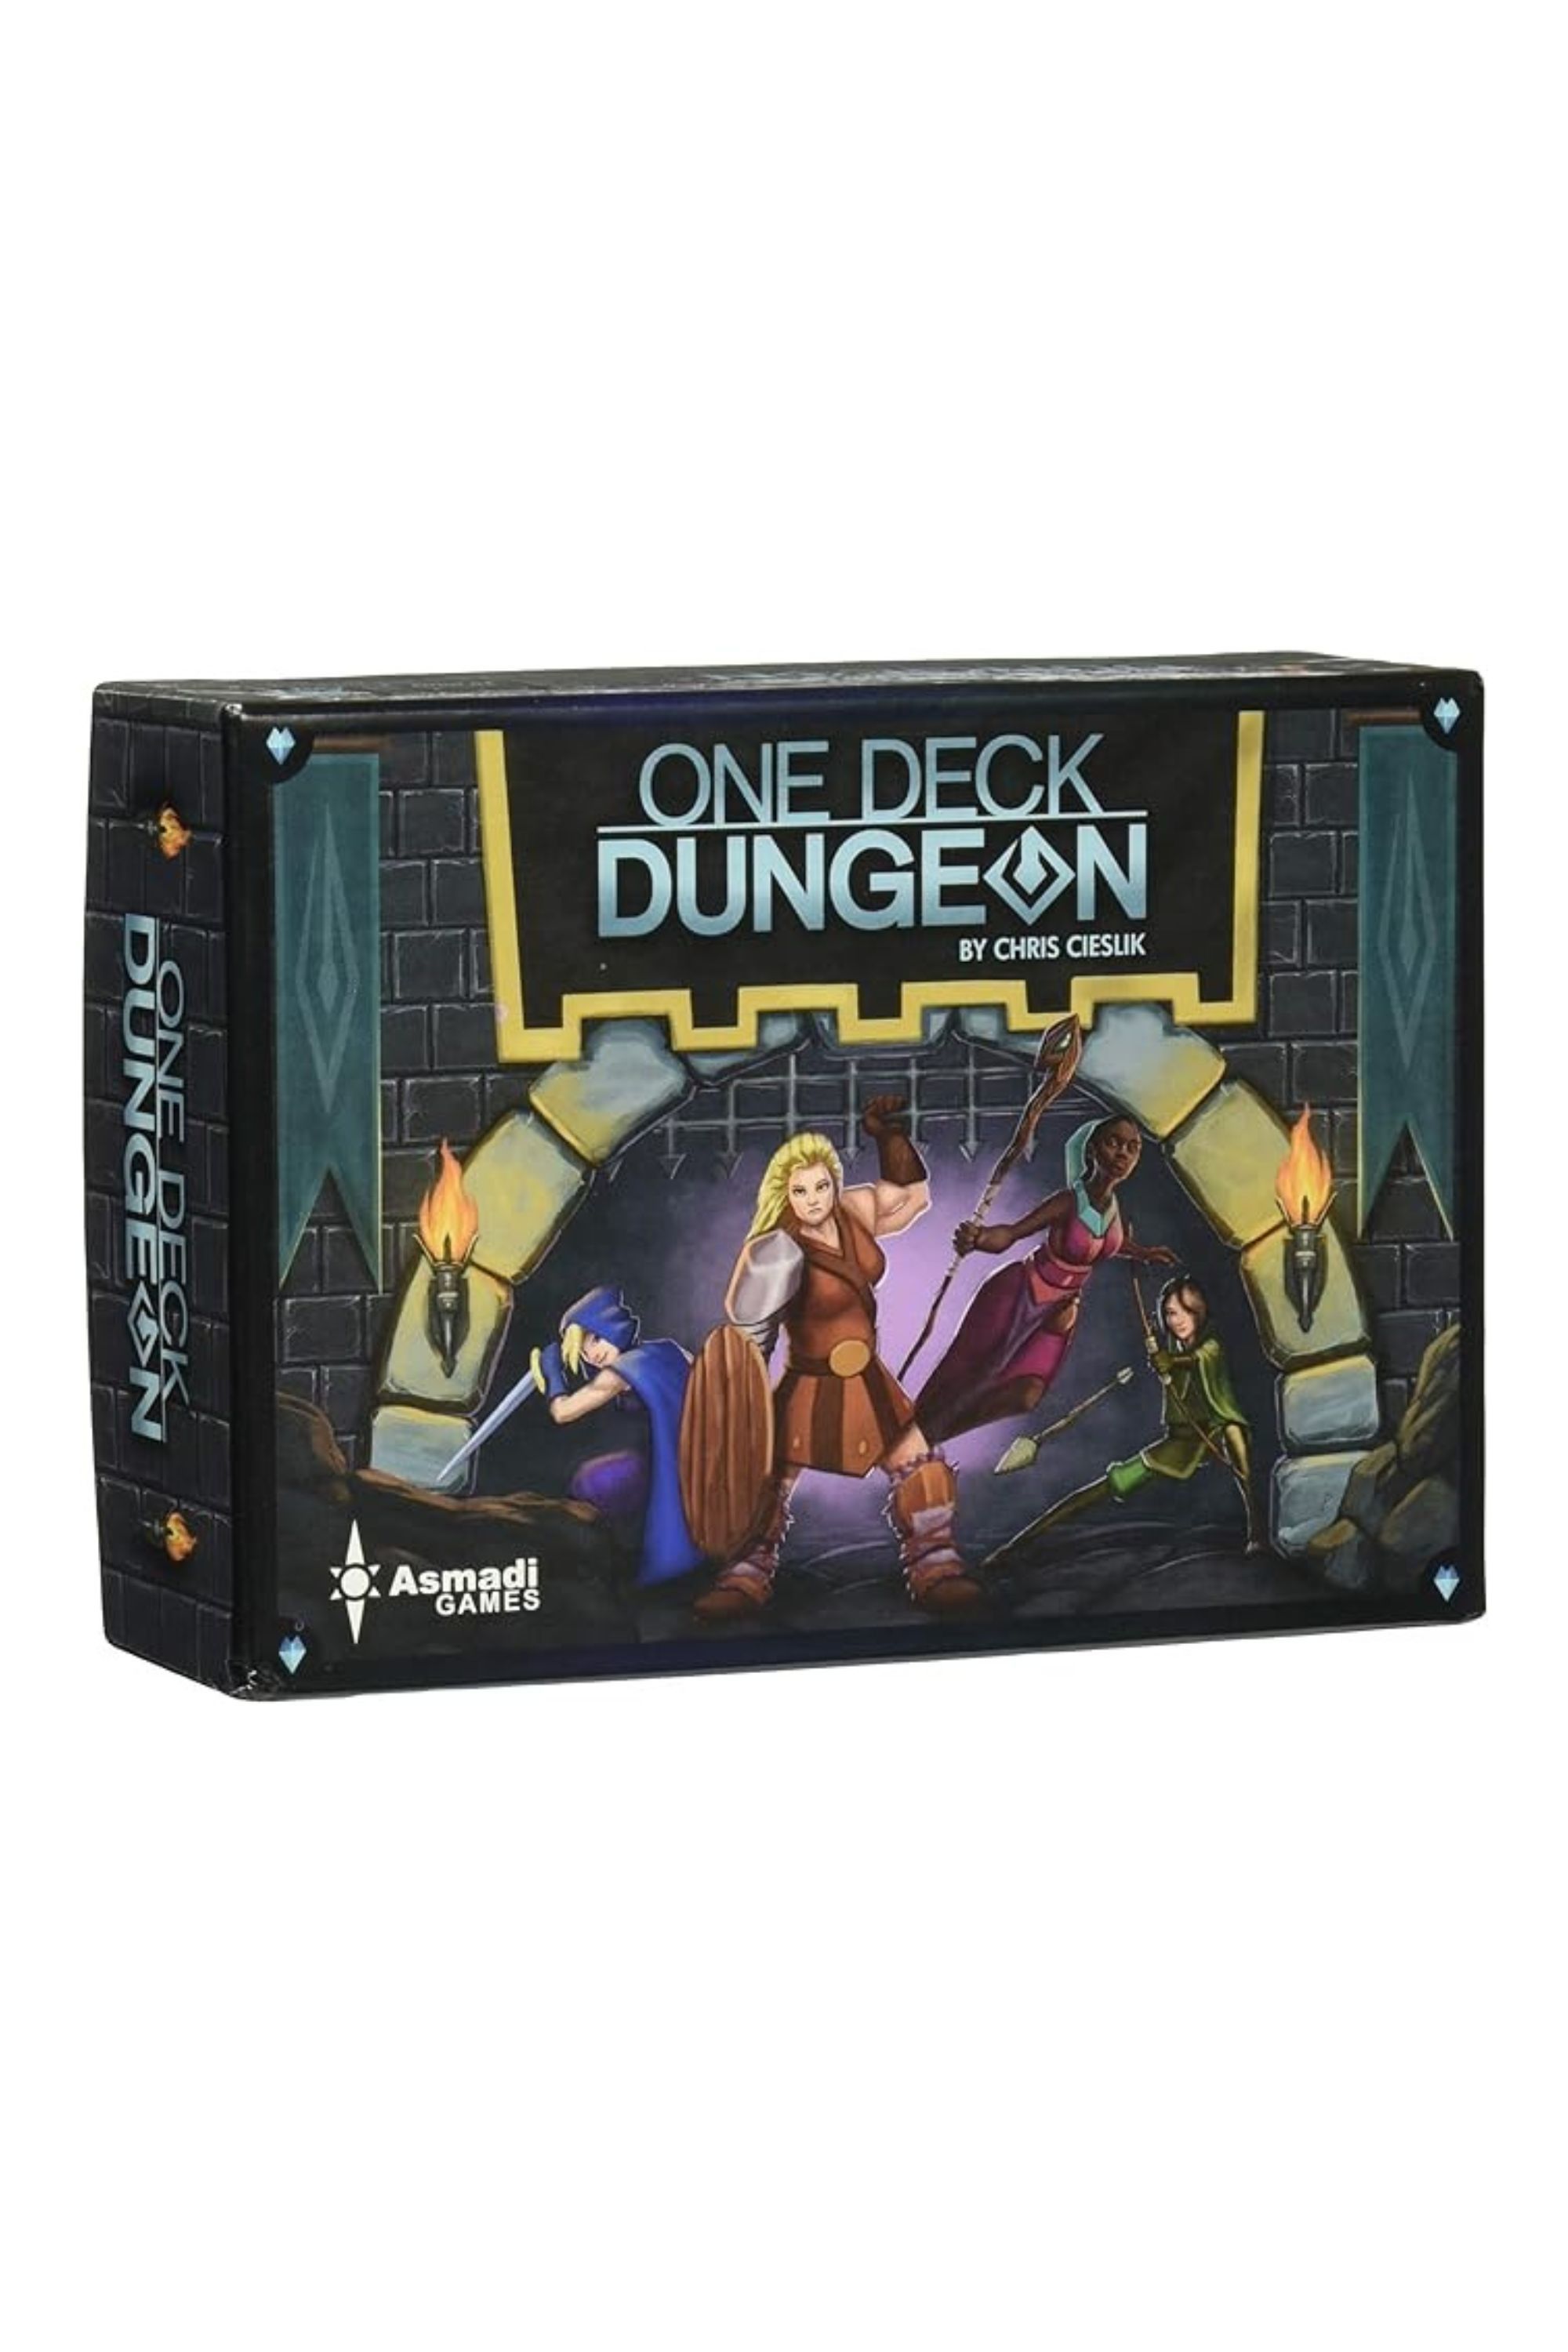  One Deck Dungeon